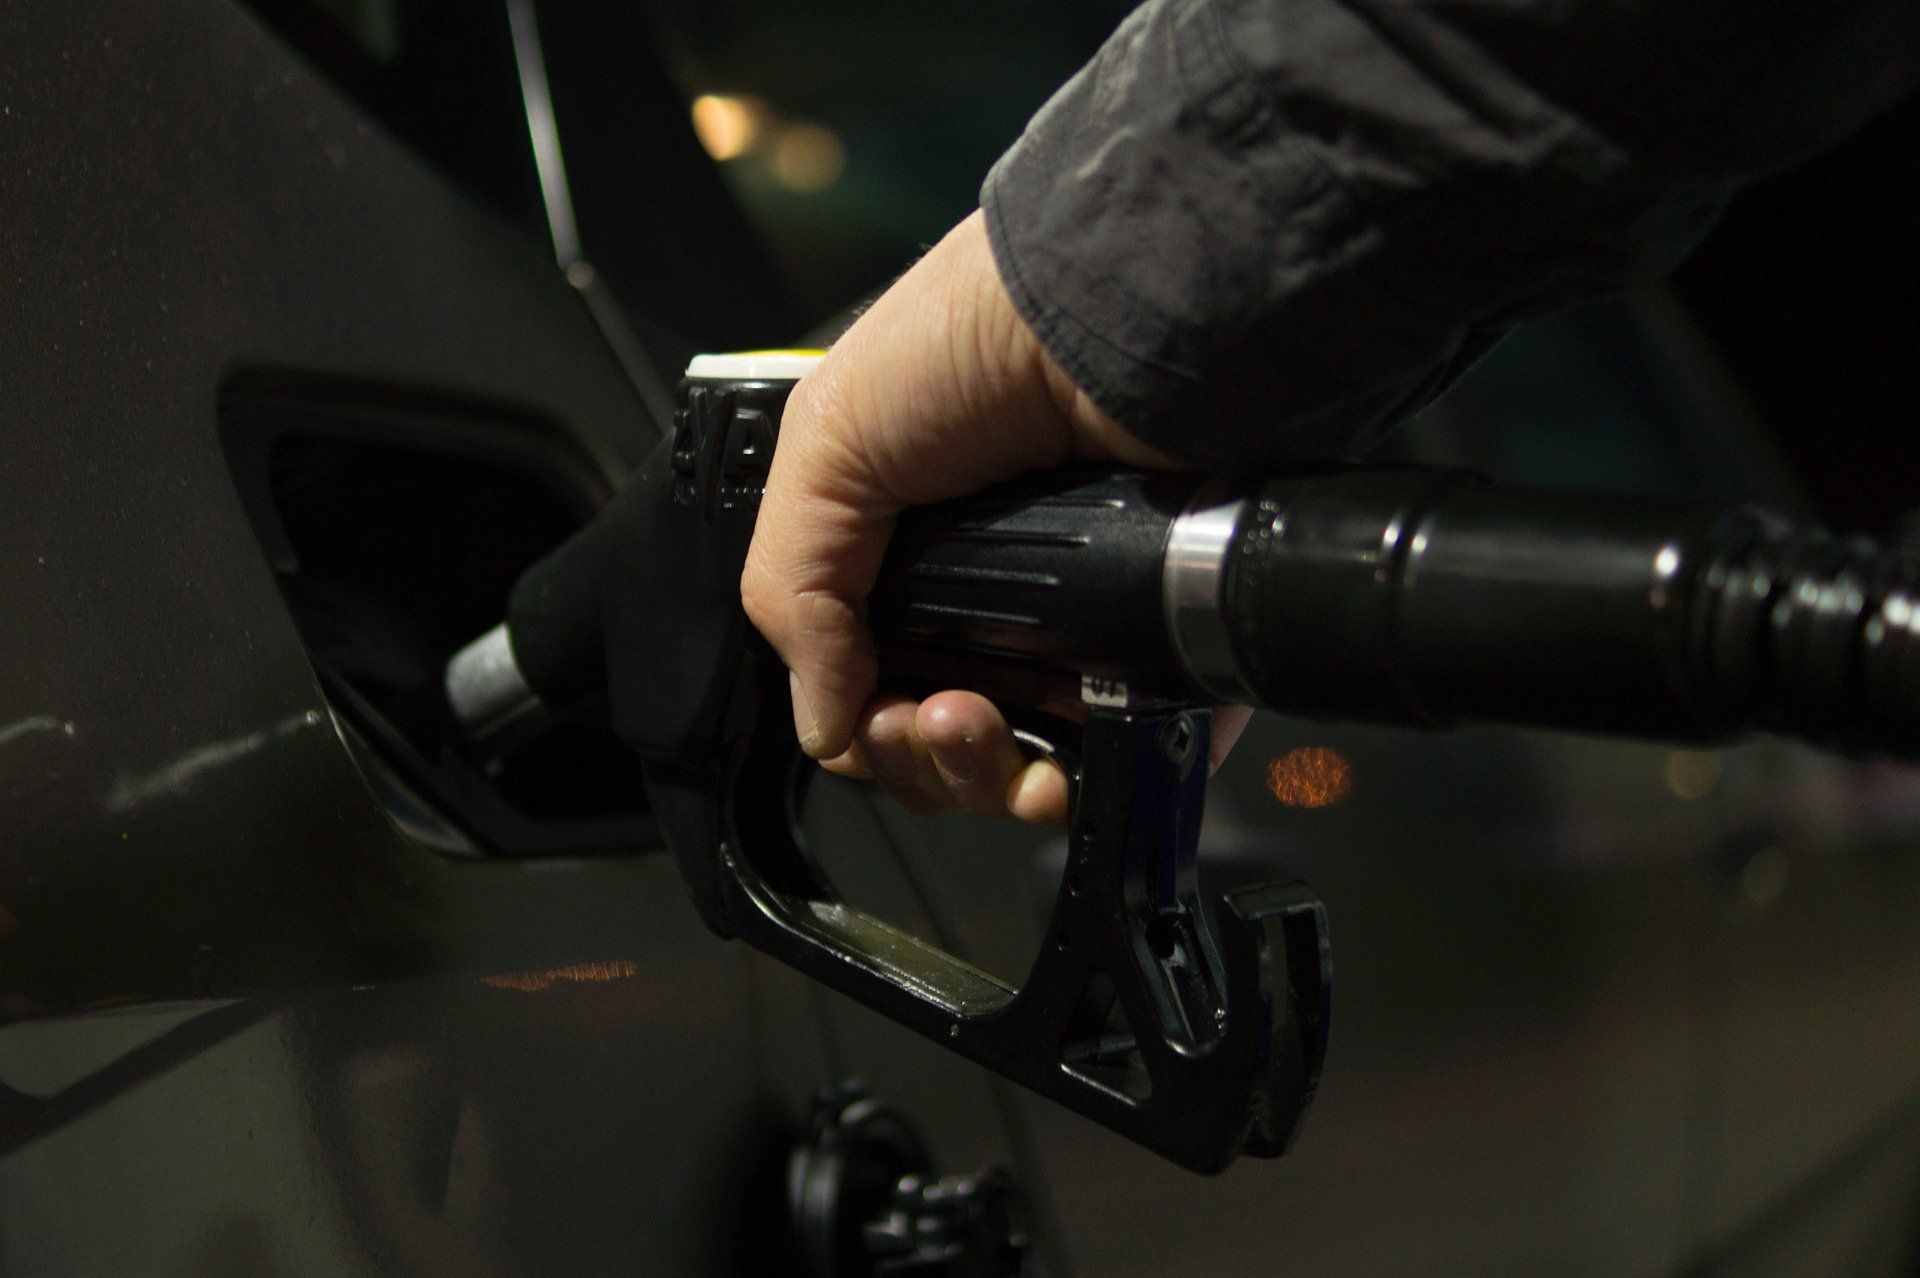 Fuel price June 10, 2022: Petrol Rs 96.72, diesel Rs 89.62 in Delhi